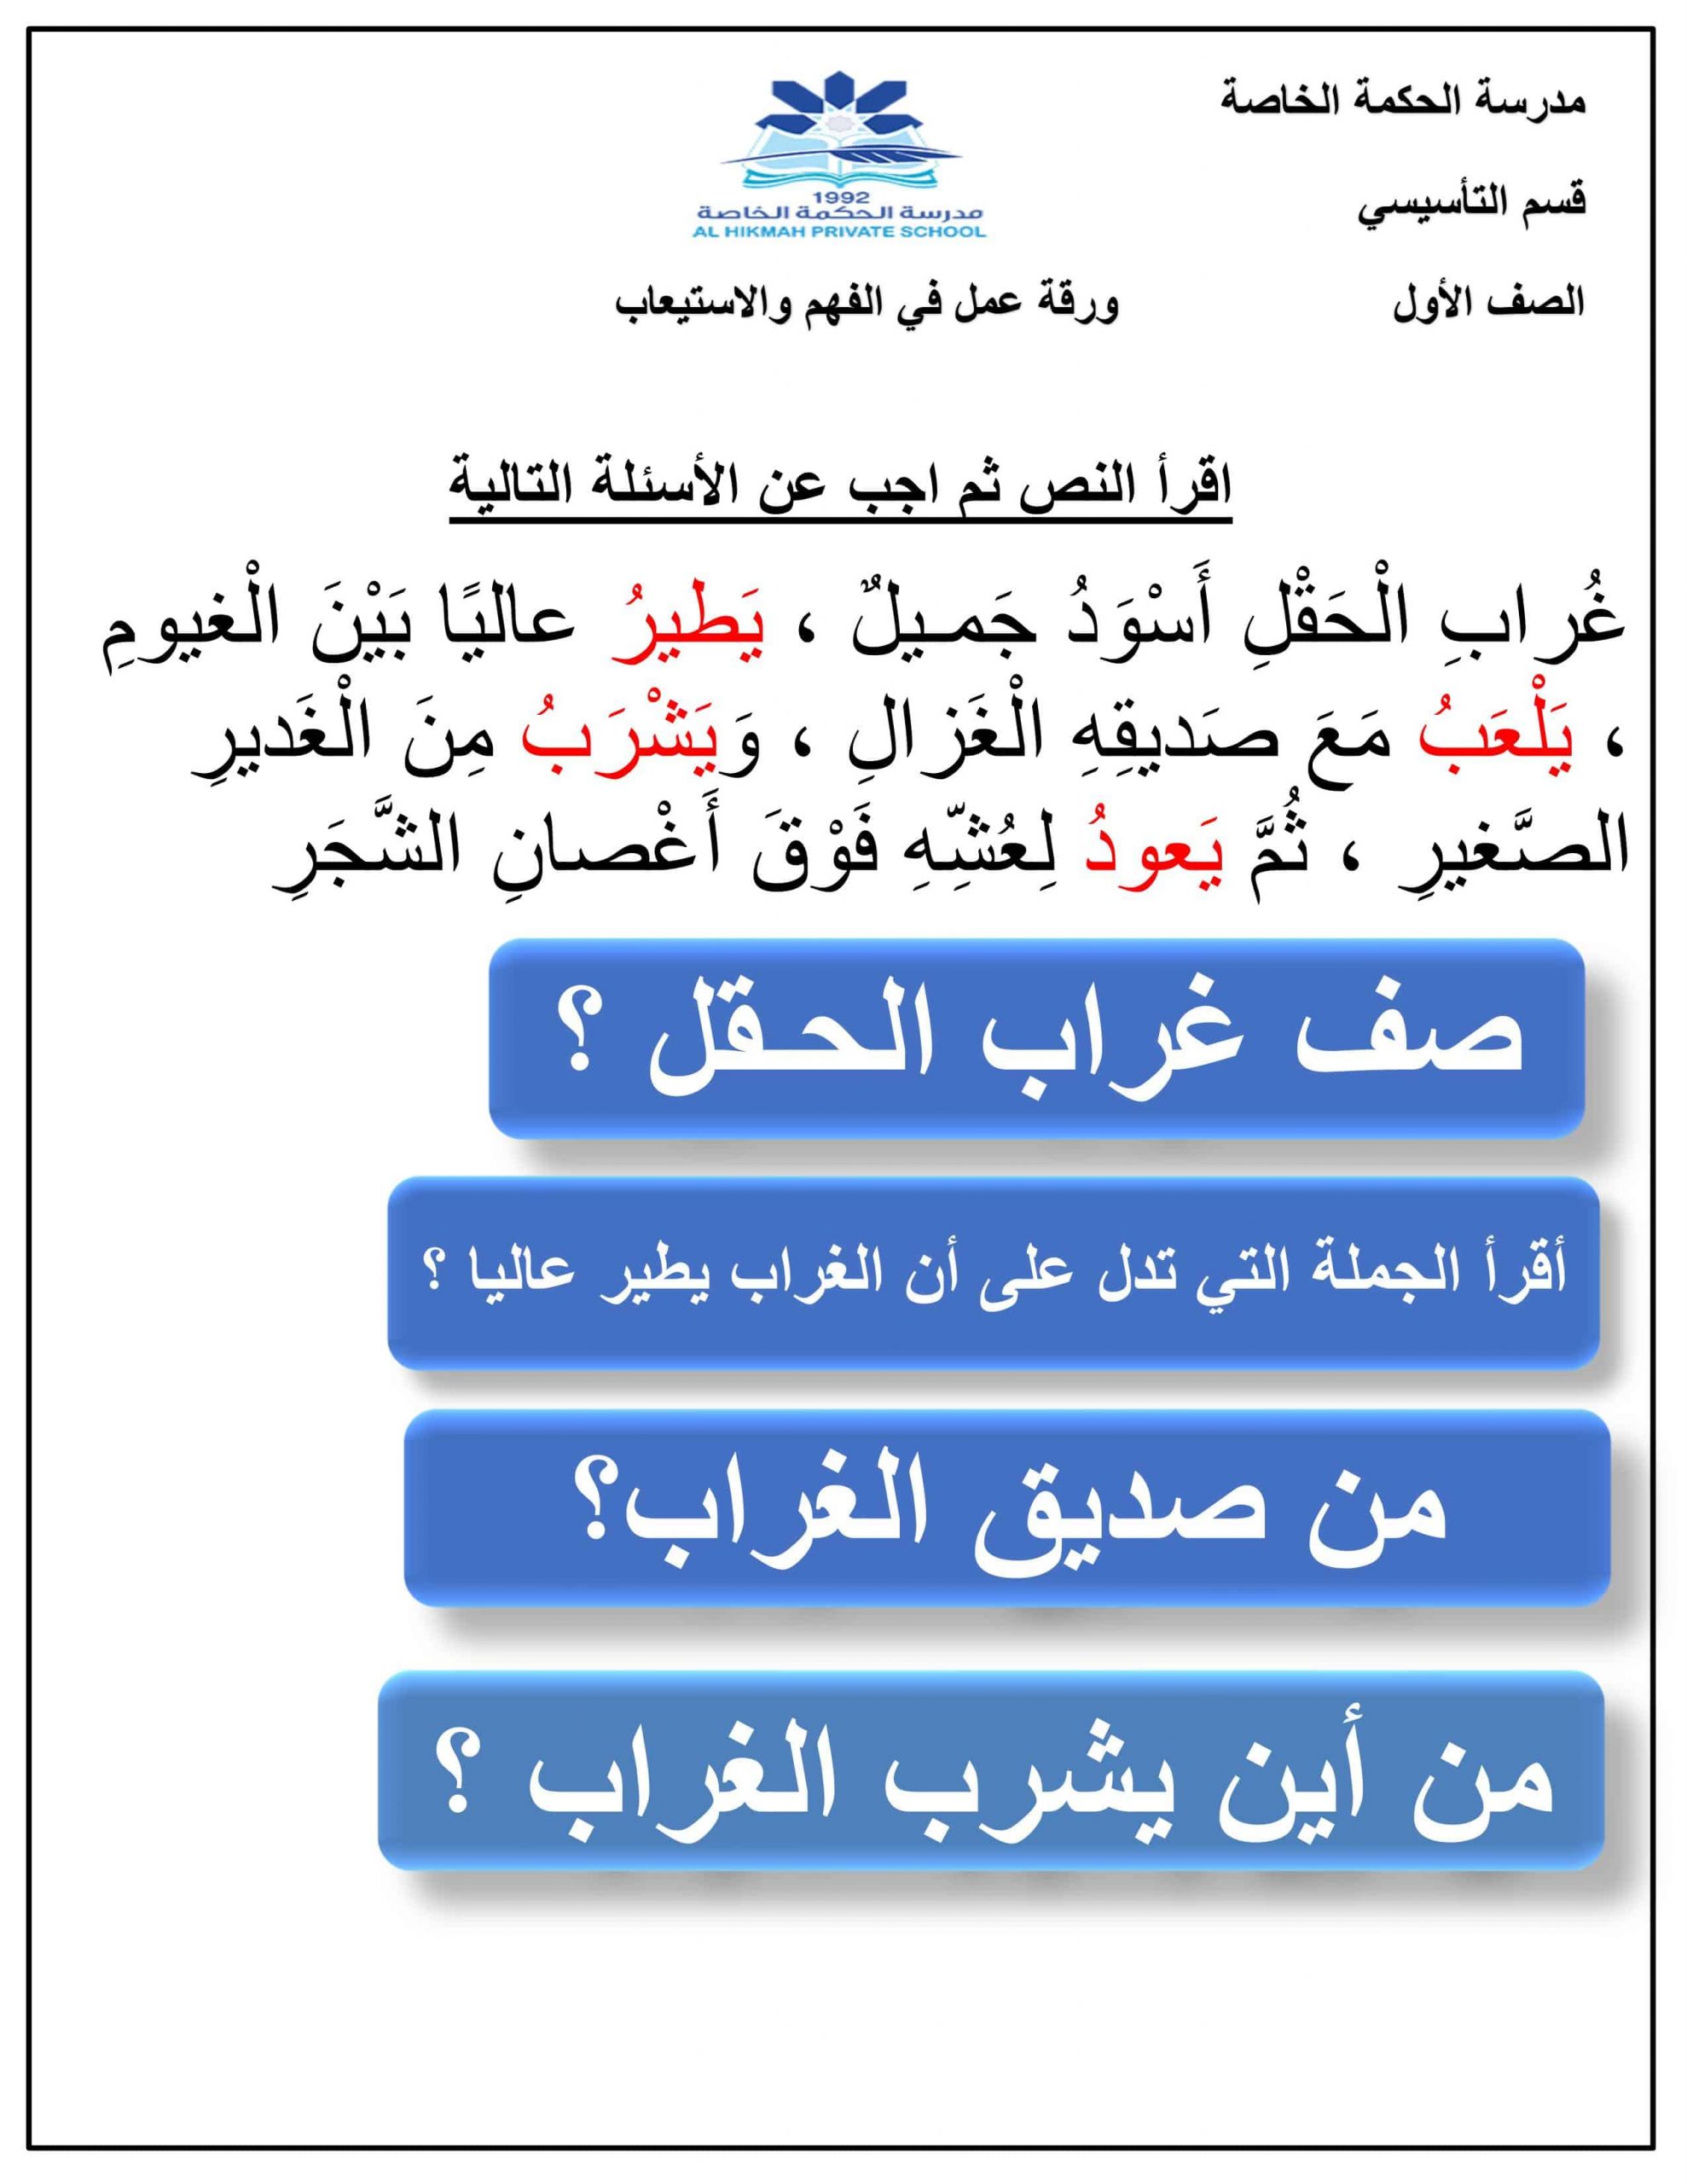 ورقة عمل الفهم والاستيعاب الأفعال الصف الأول مادة اللغة العربية 